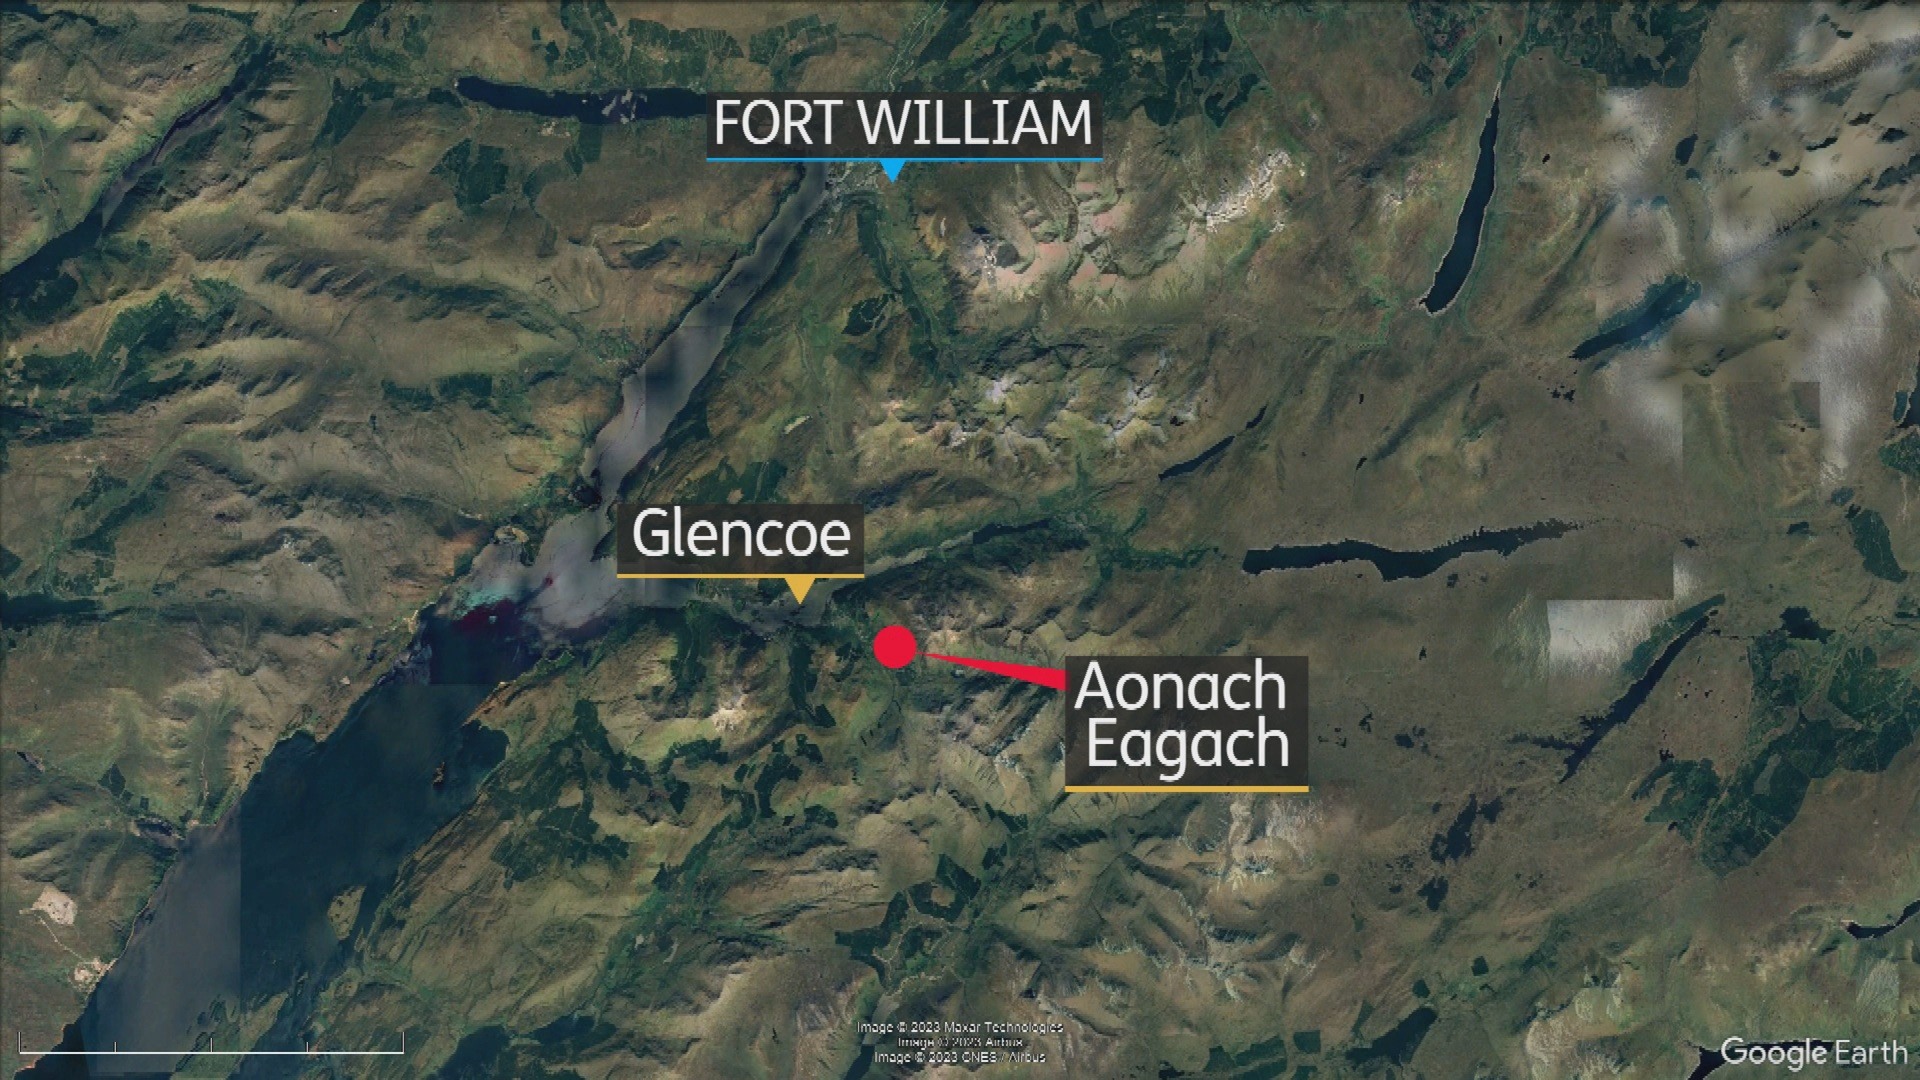 Aonach Eagach ridge in Glencoe, south of Fort William.